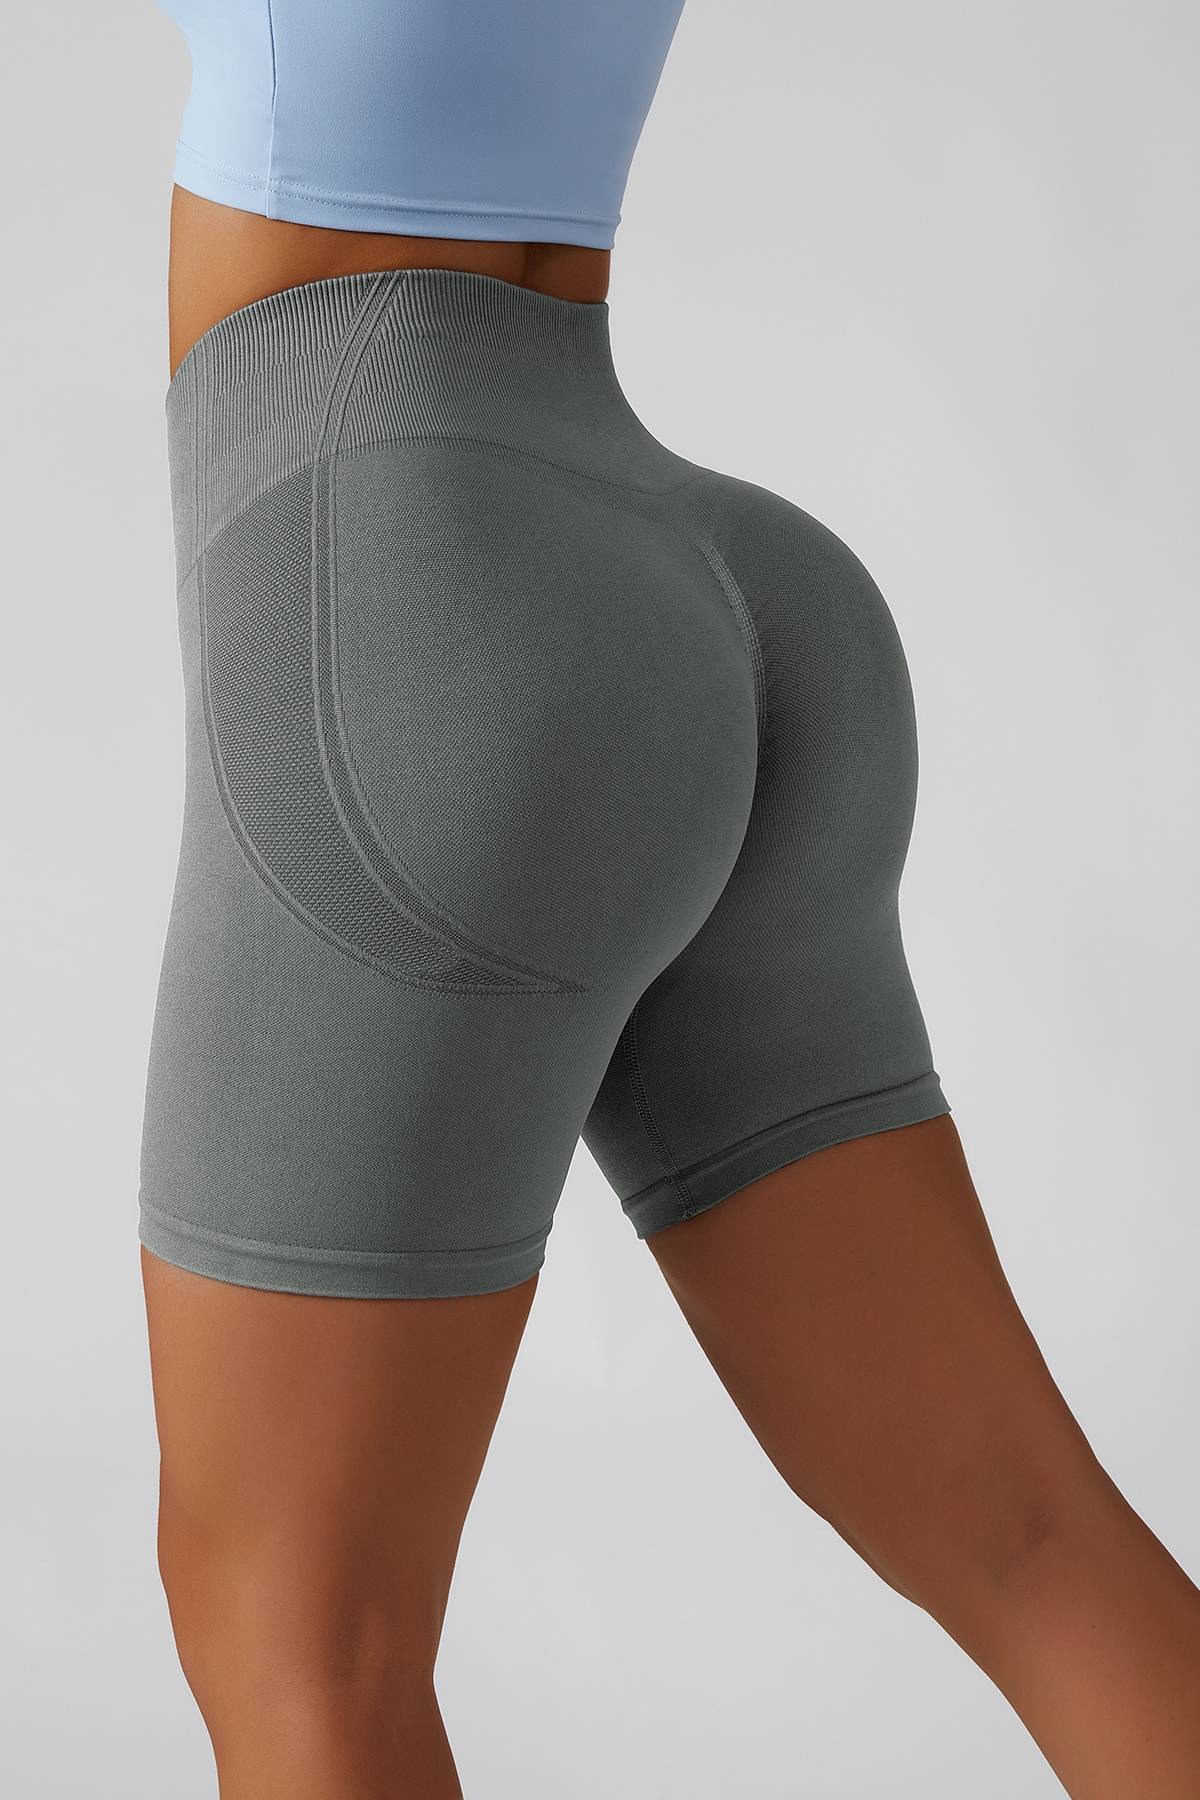 Ombre High-Rise Seamless Scrunch Butt Lifting Biker Shorts for Women –  Zioccie